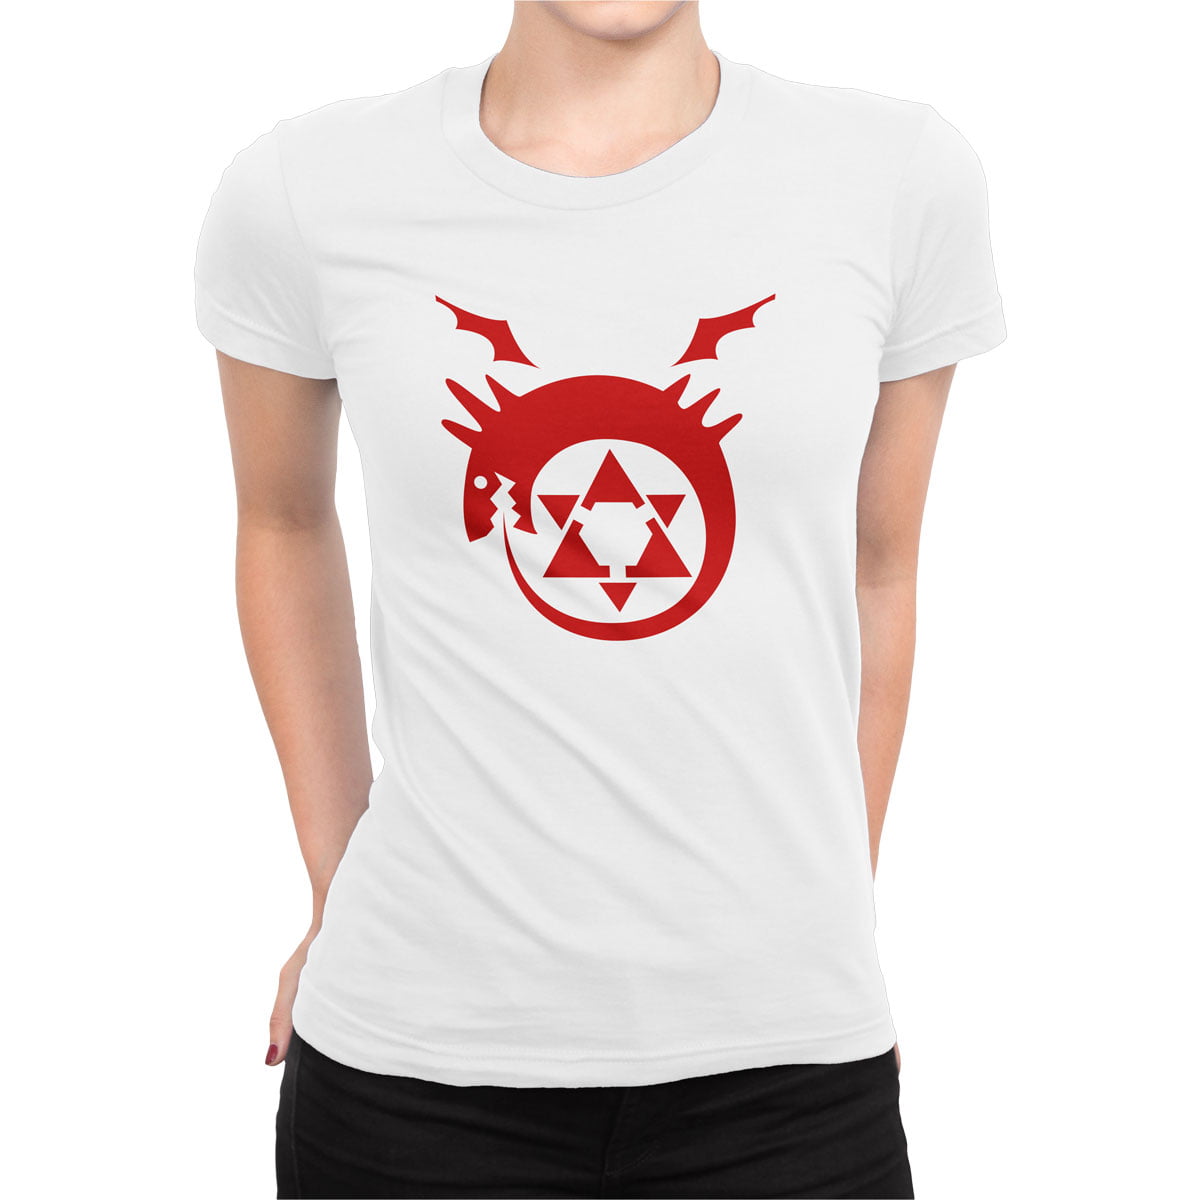 Fma logo tisort kadin b - fullmetal alchemist kadın t-shirt - figurex